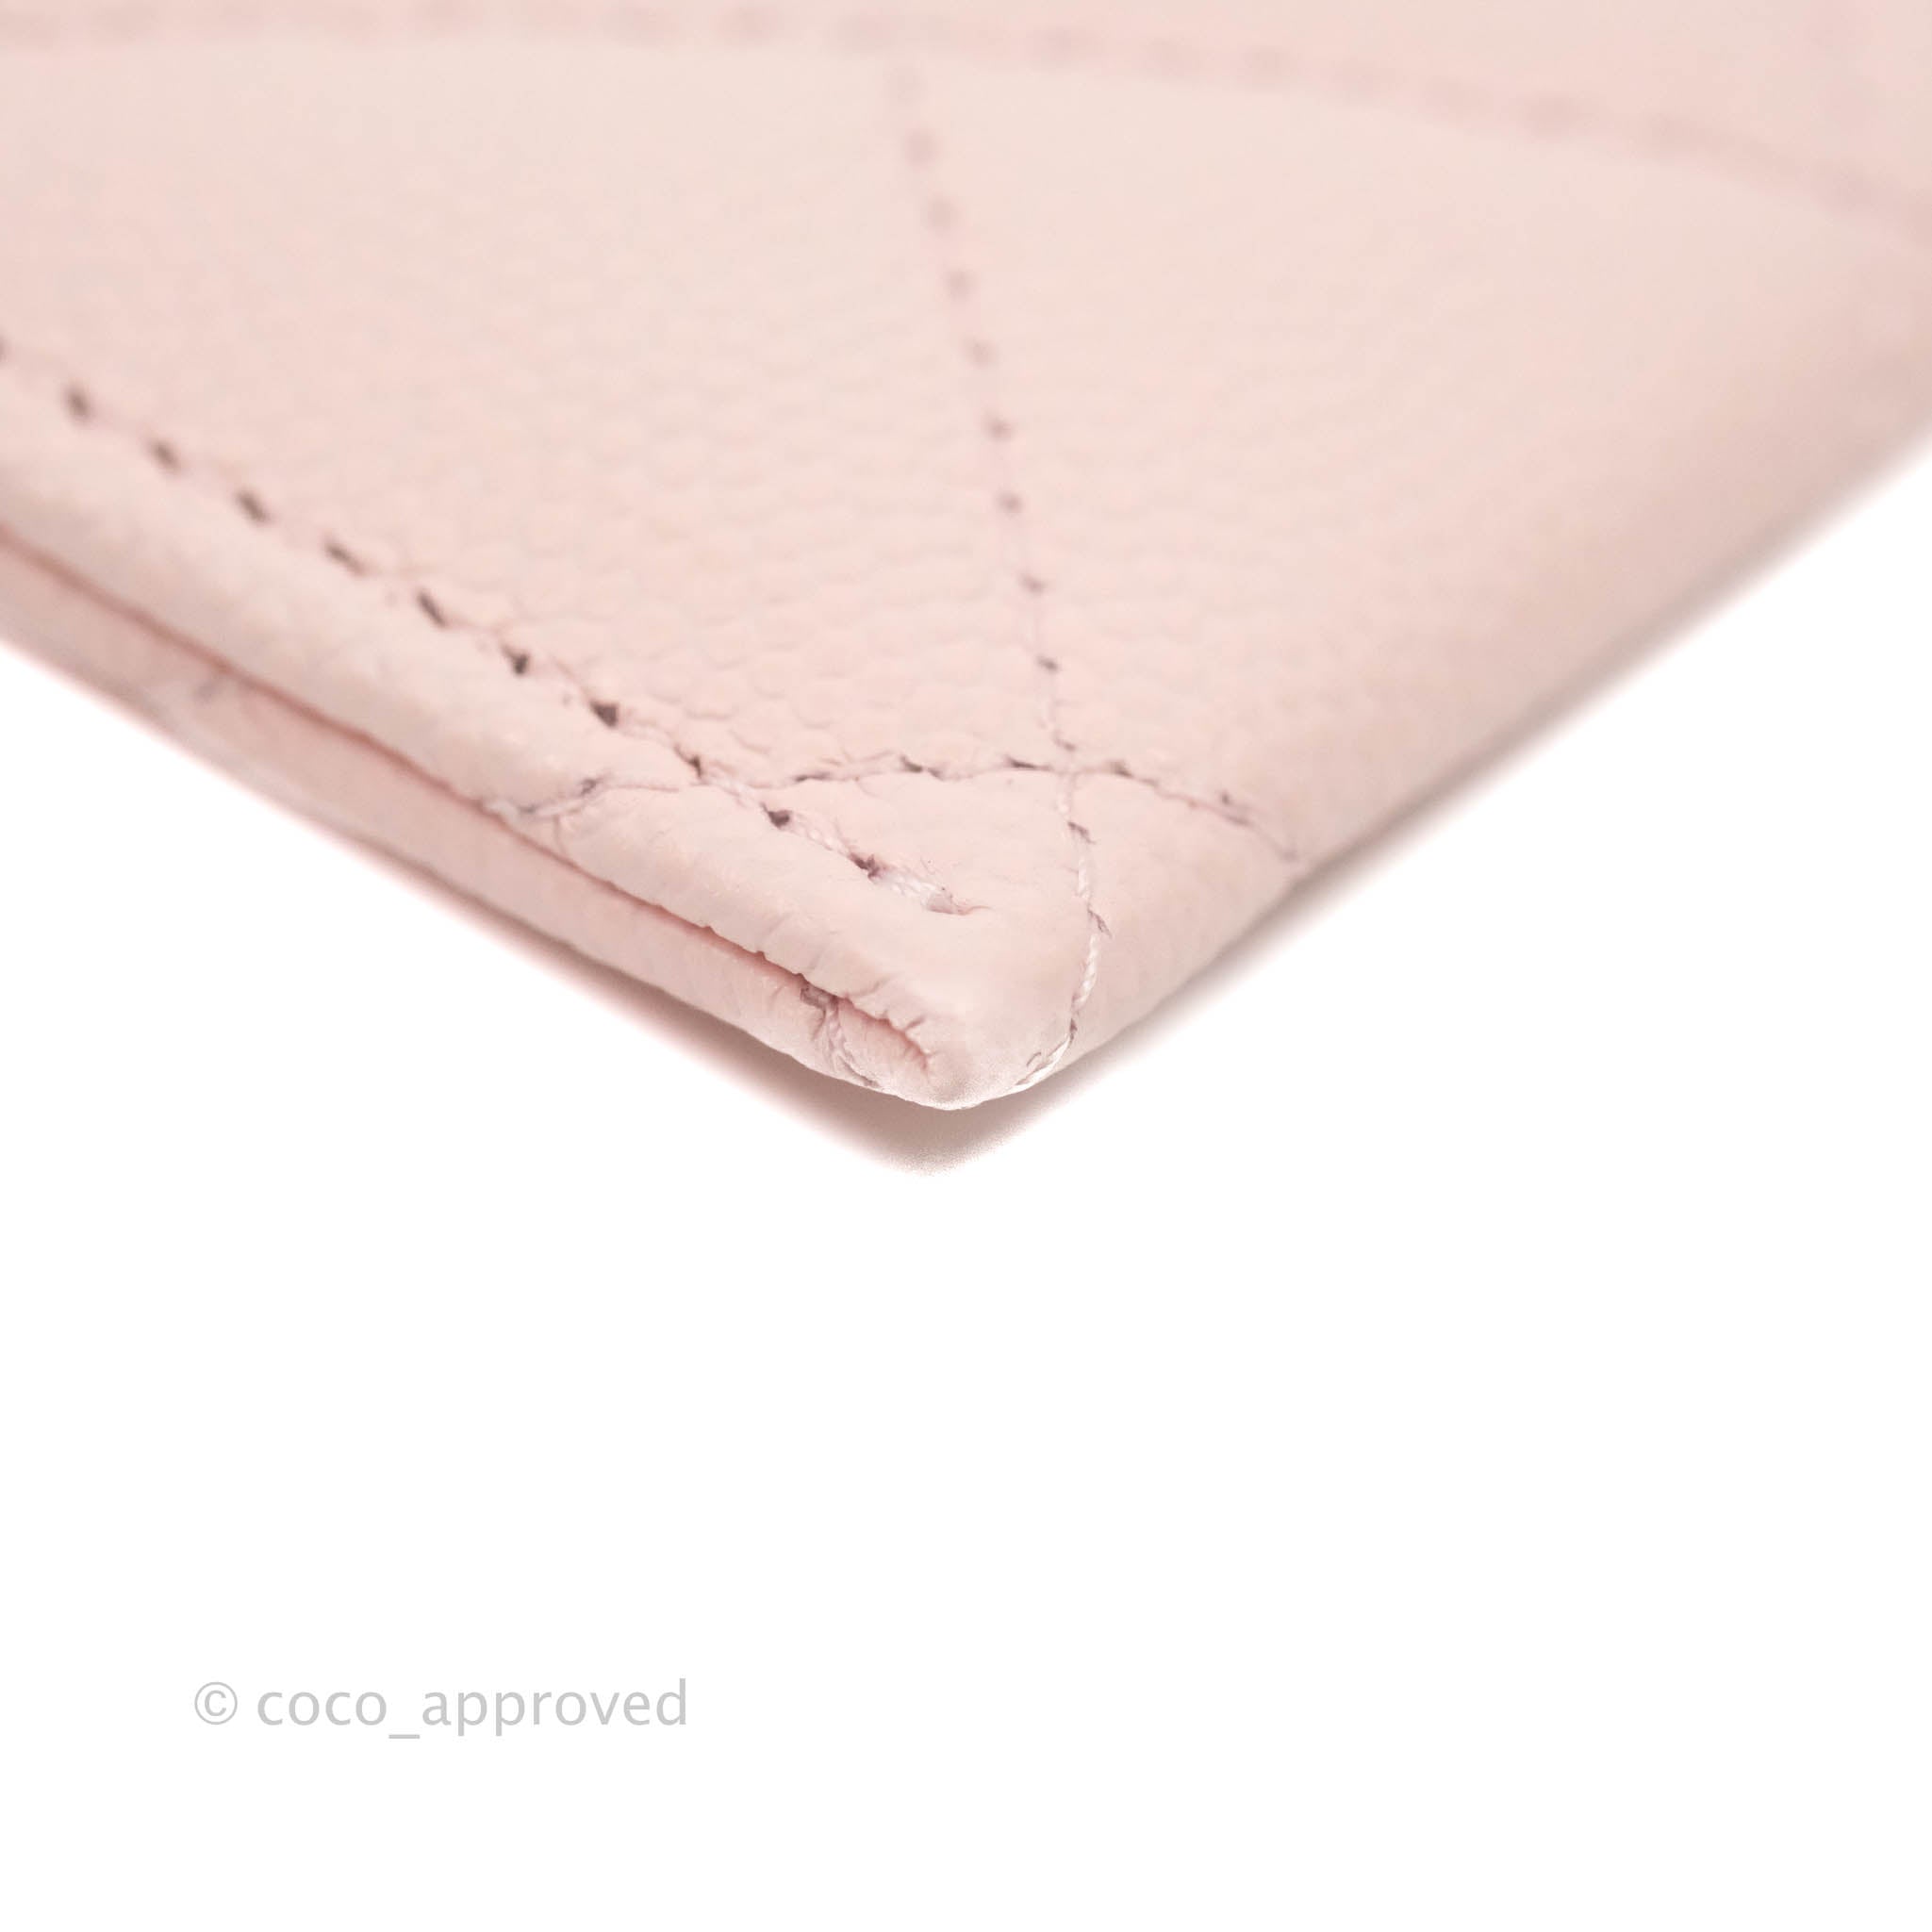 Best 25+ Deals for Pink Chanel Bag Set